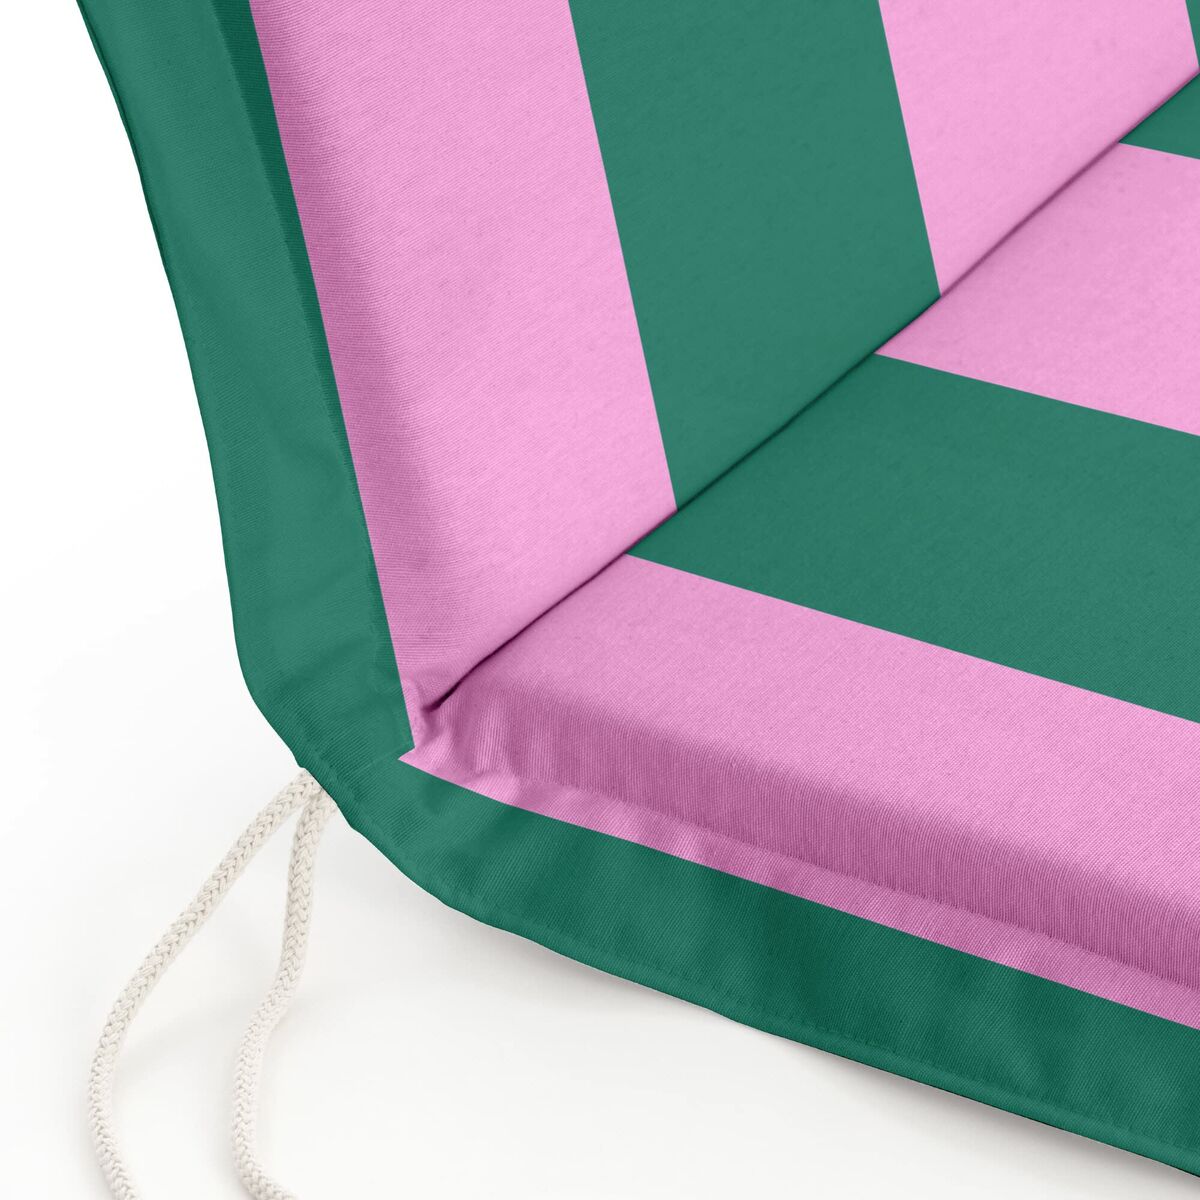 Chair cushion Belum 0120-410 53 x 4 x 101 cm